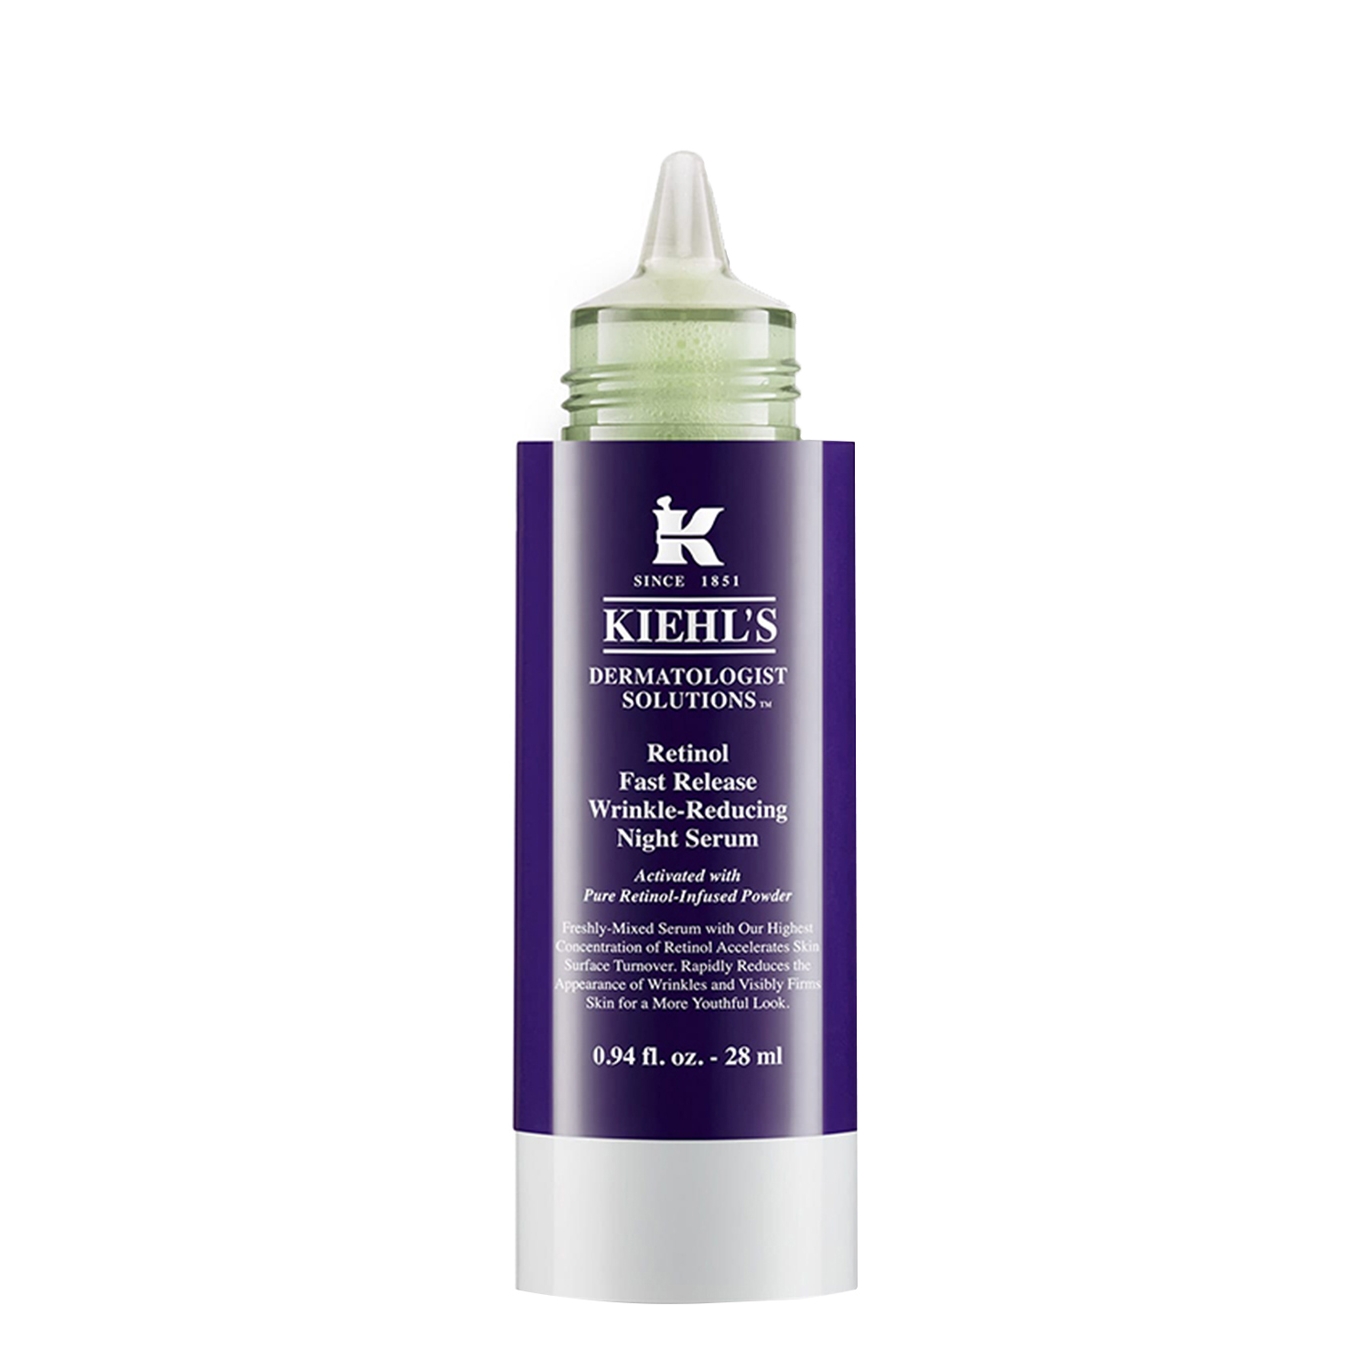 Kiehl's Retinol Fast Release Wrinkle-Reducing Night Serum 28ml